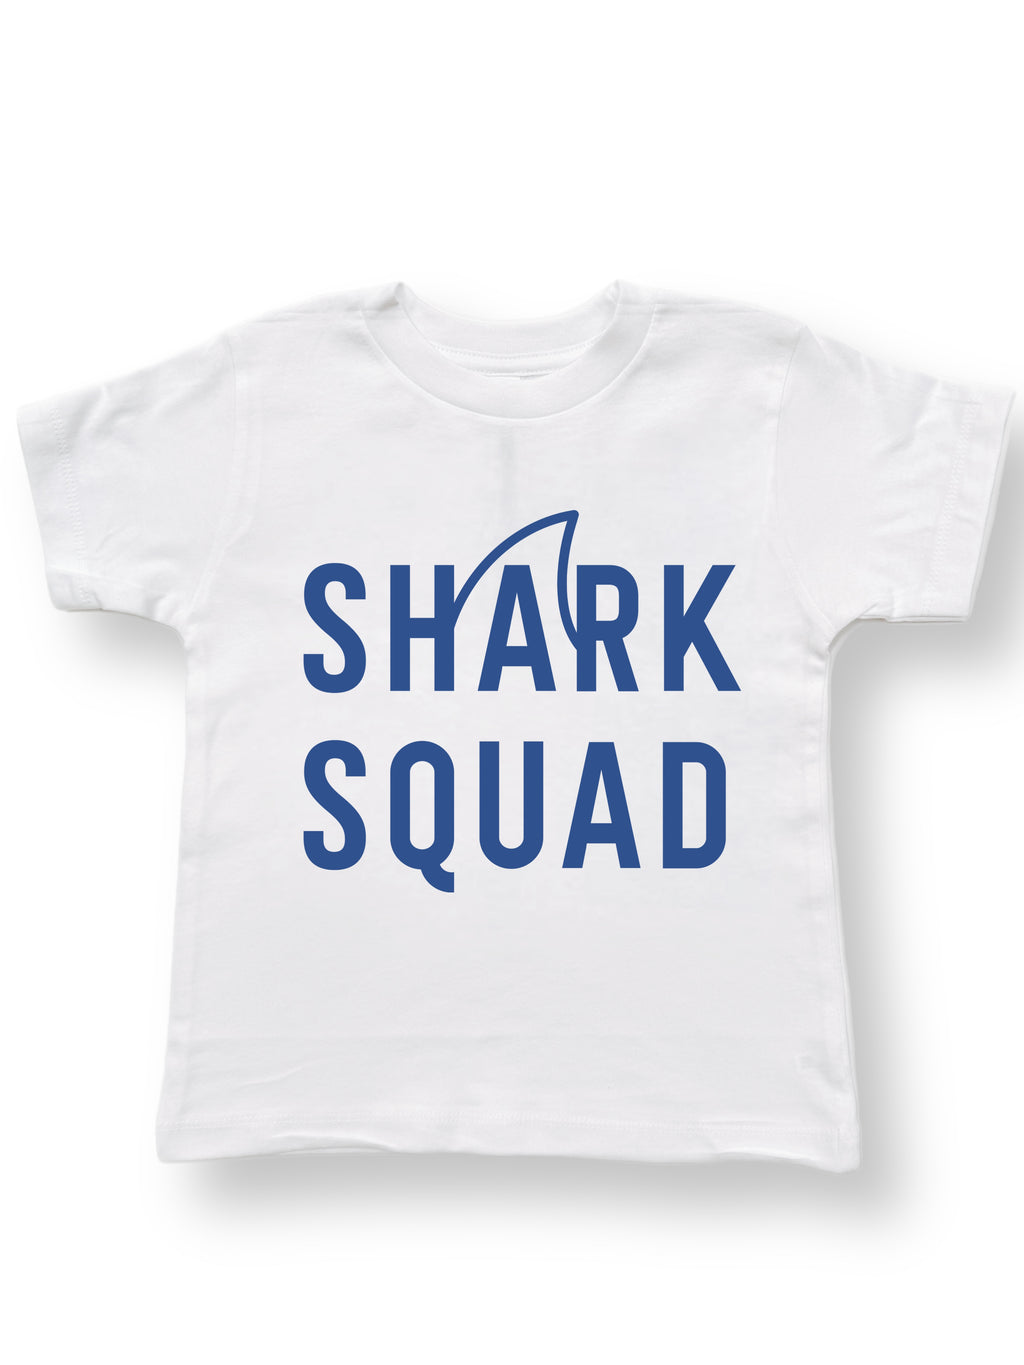 Shark Squad Tee